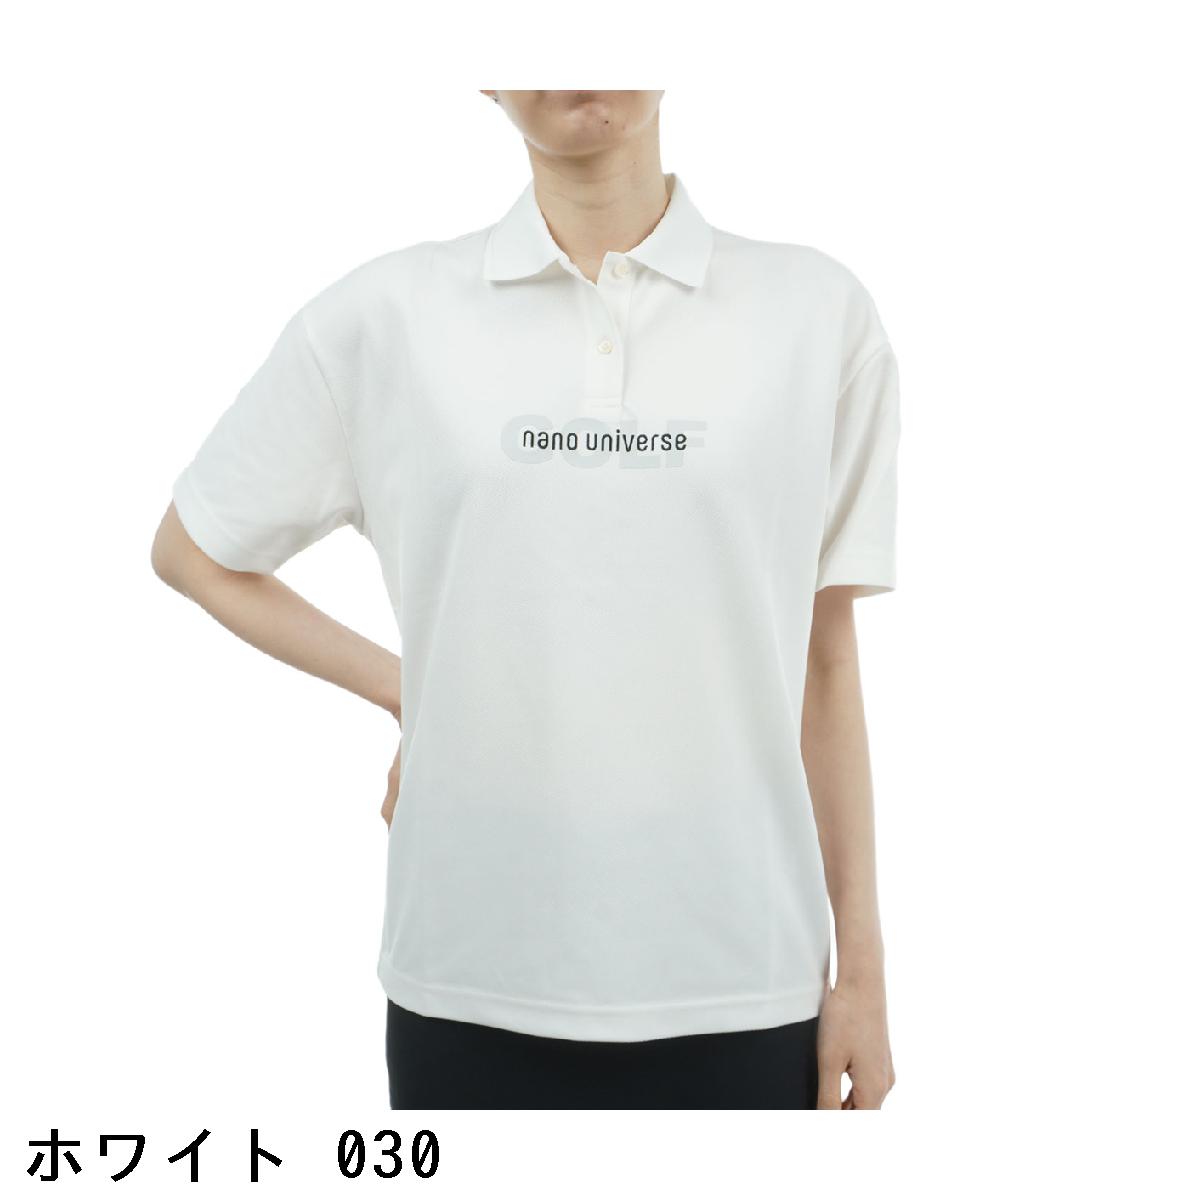 ビーツ・パー・ミニット　NANO universe GOLF　ワイドロゴ 半袖ポロシャツ　レディス